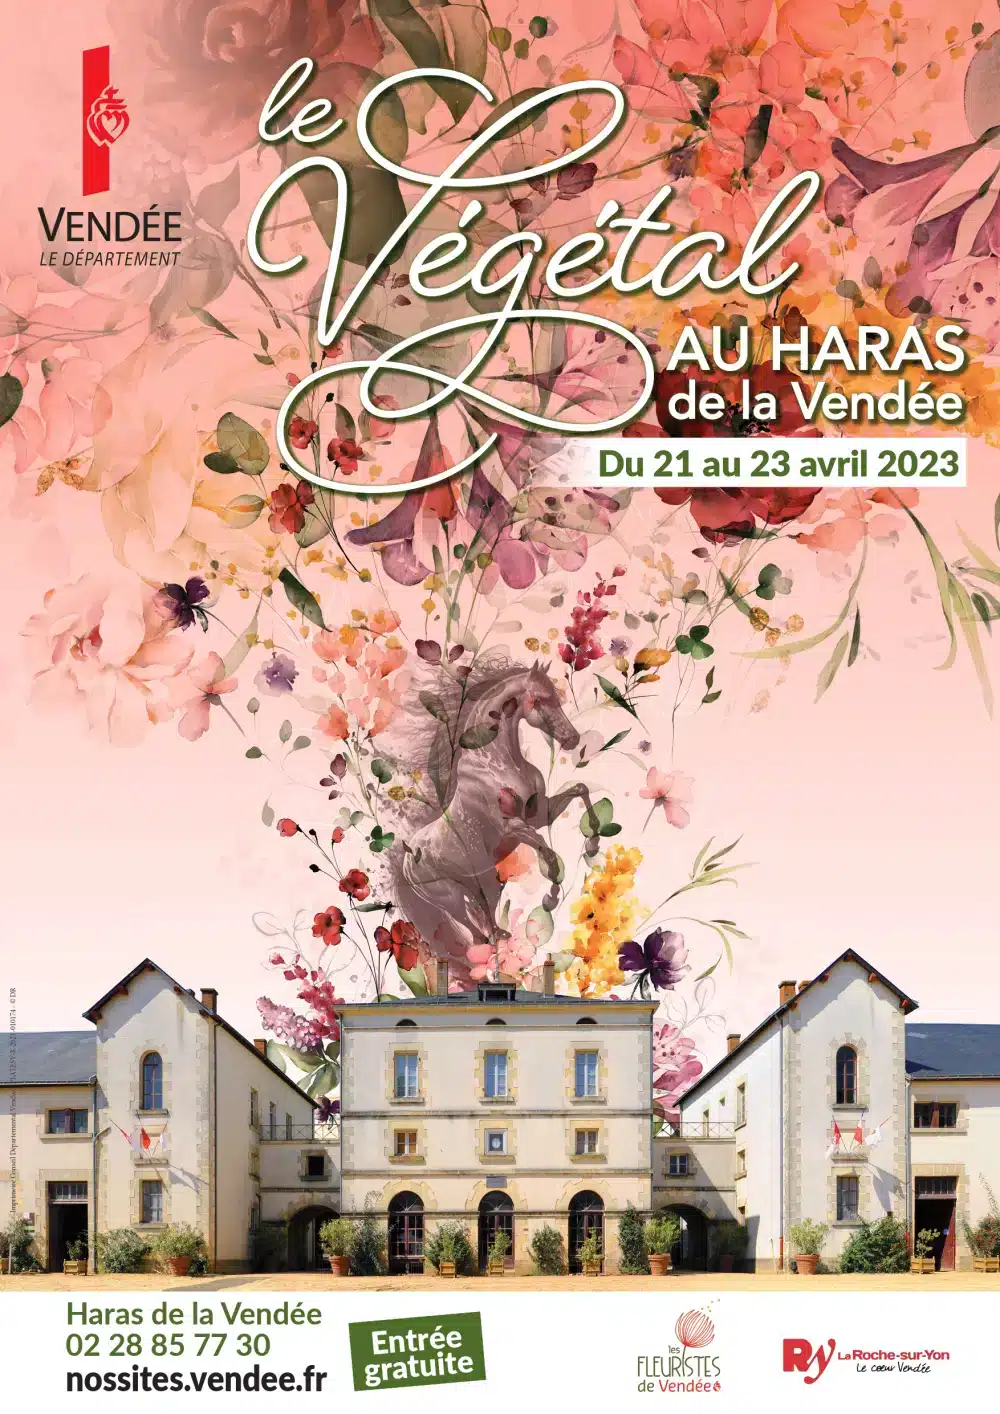 Les Fleuristes de Vendée présentent pour sa troisième édition, "Le Végétal au Haras" les 21, 22 et 23 avril 2023, au Haras de la Vendée